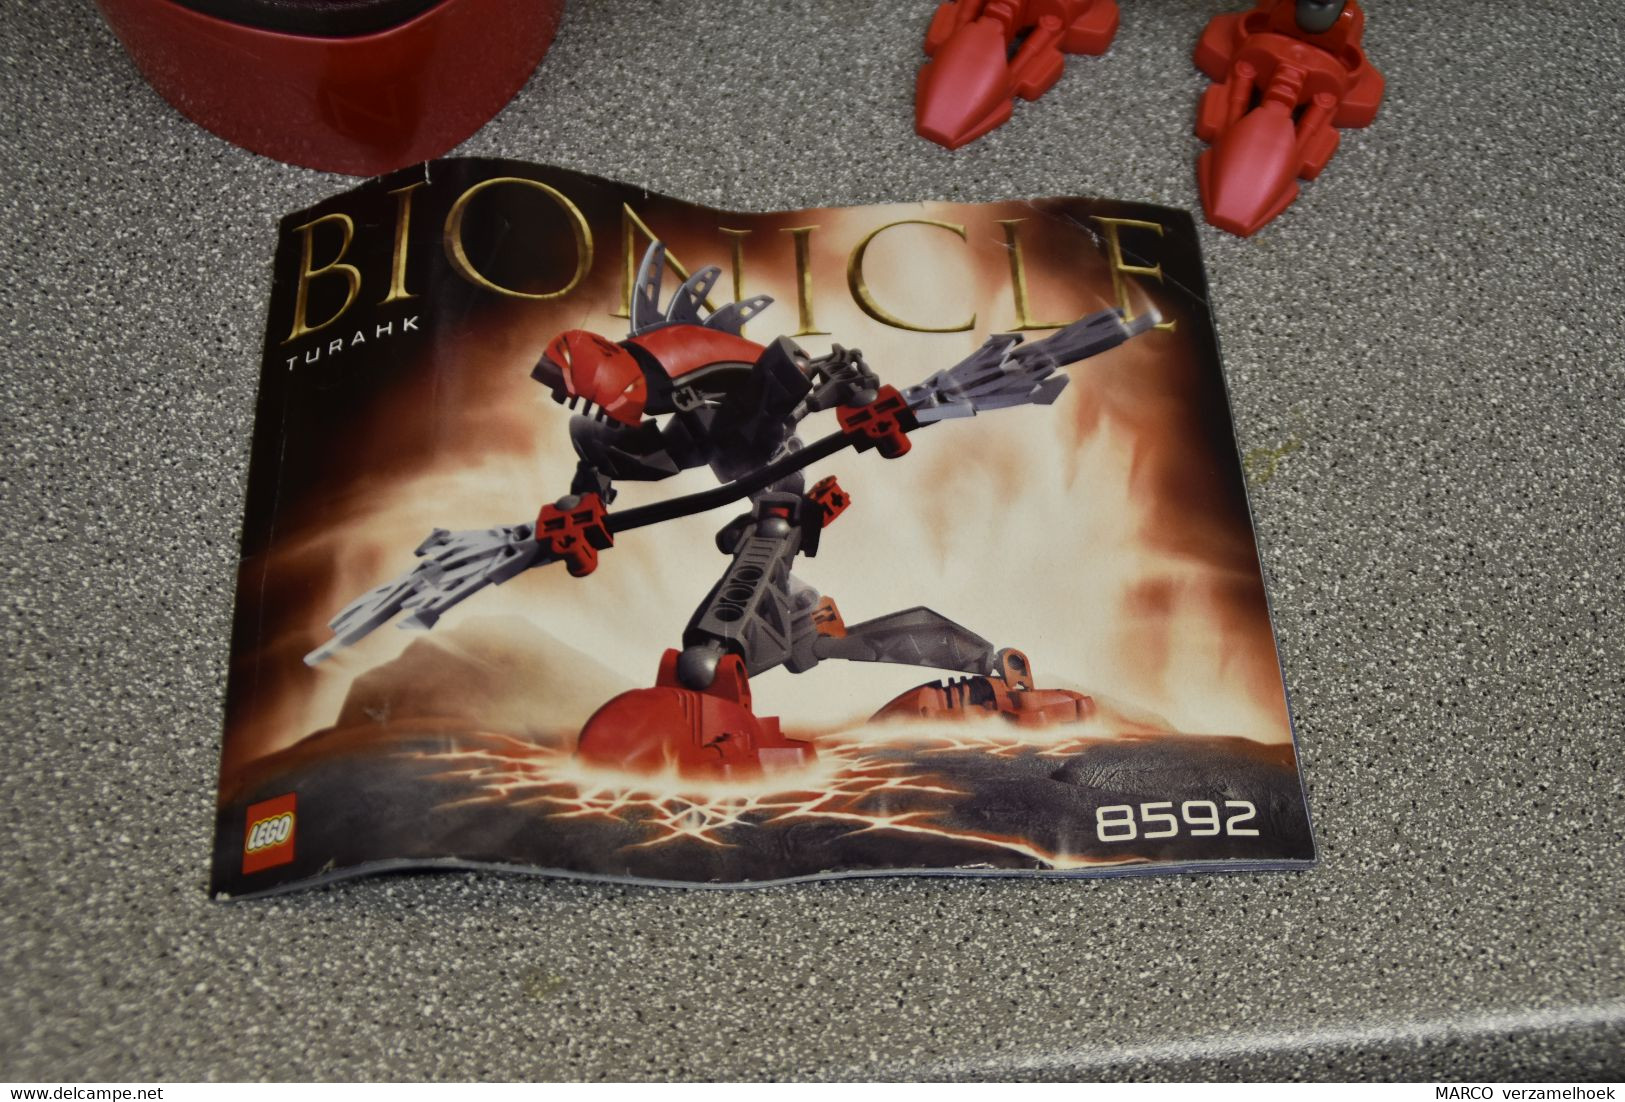 LEGO Bouwdoos 8592 Turahk Bionicle - Lego Technic